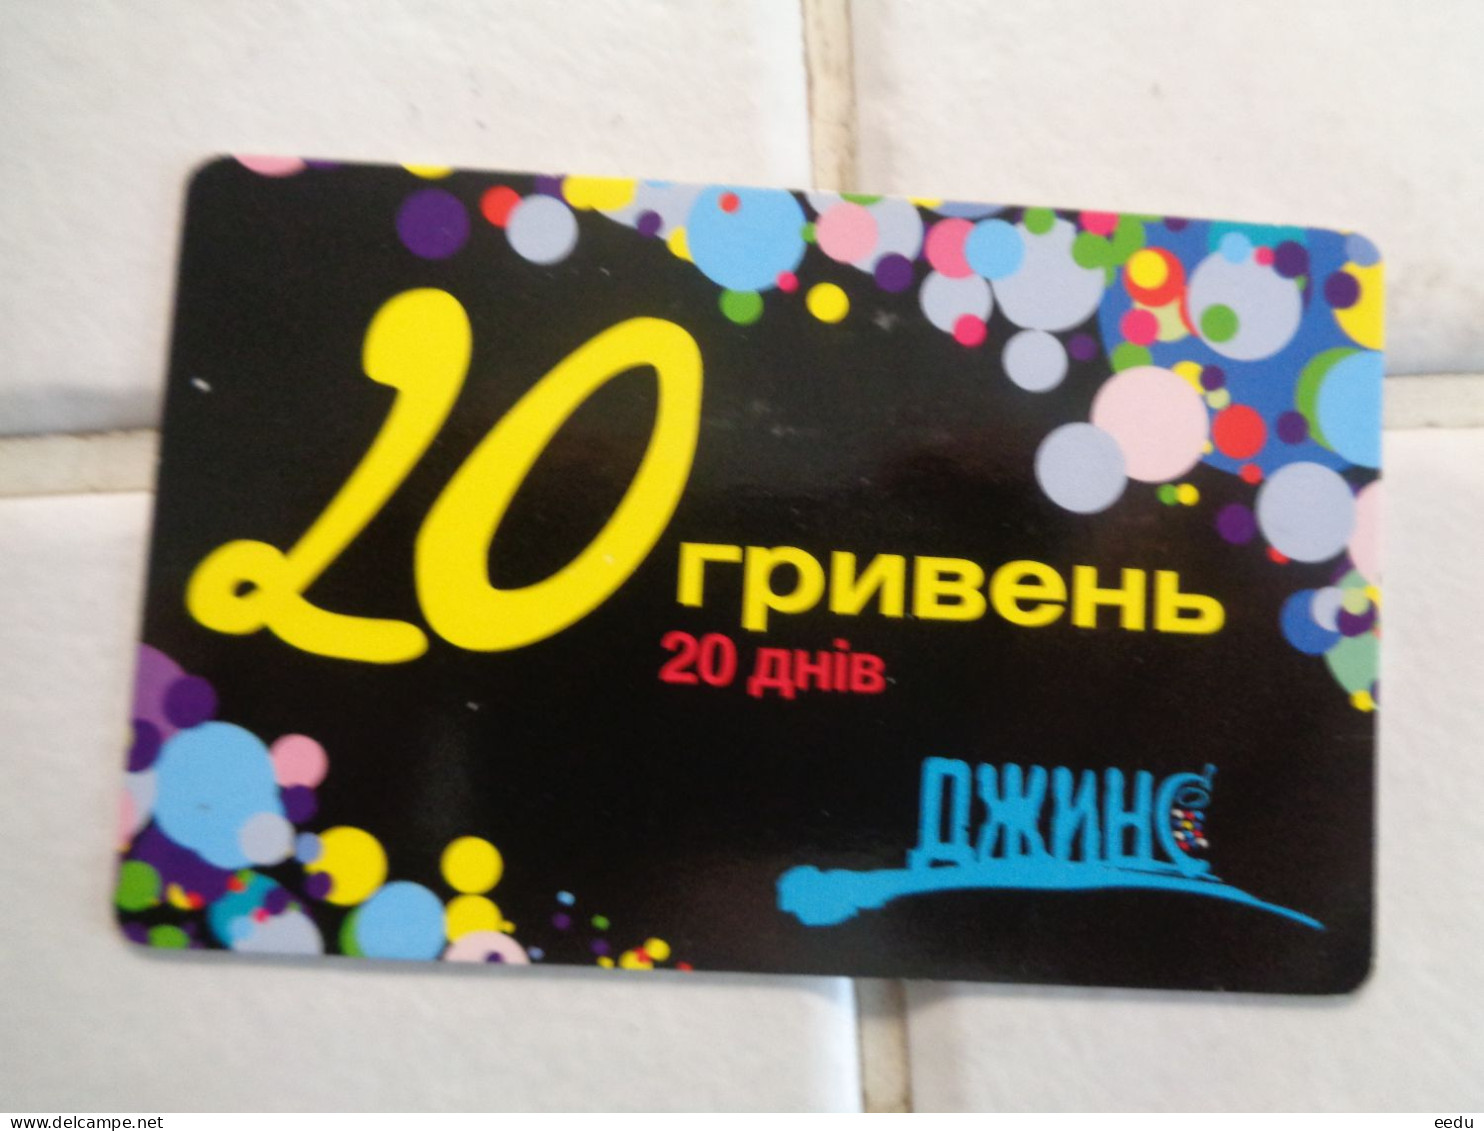 Ukraine Phonecard - Oekraïne